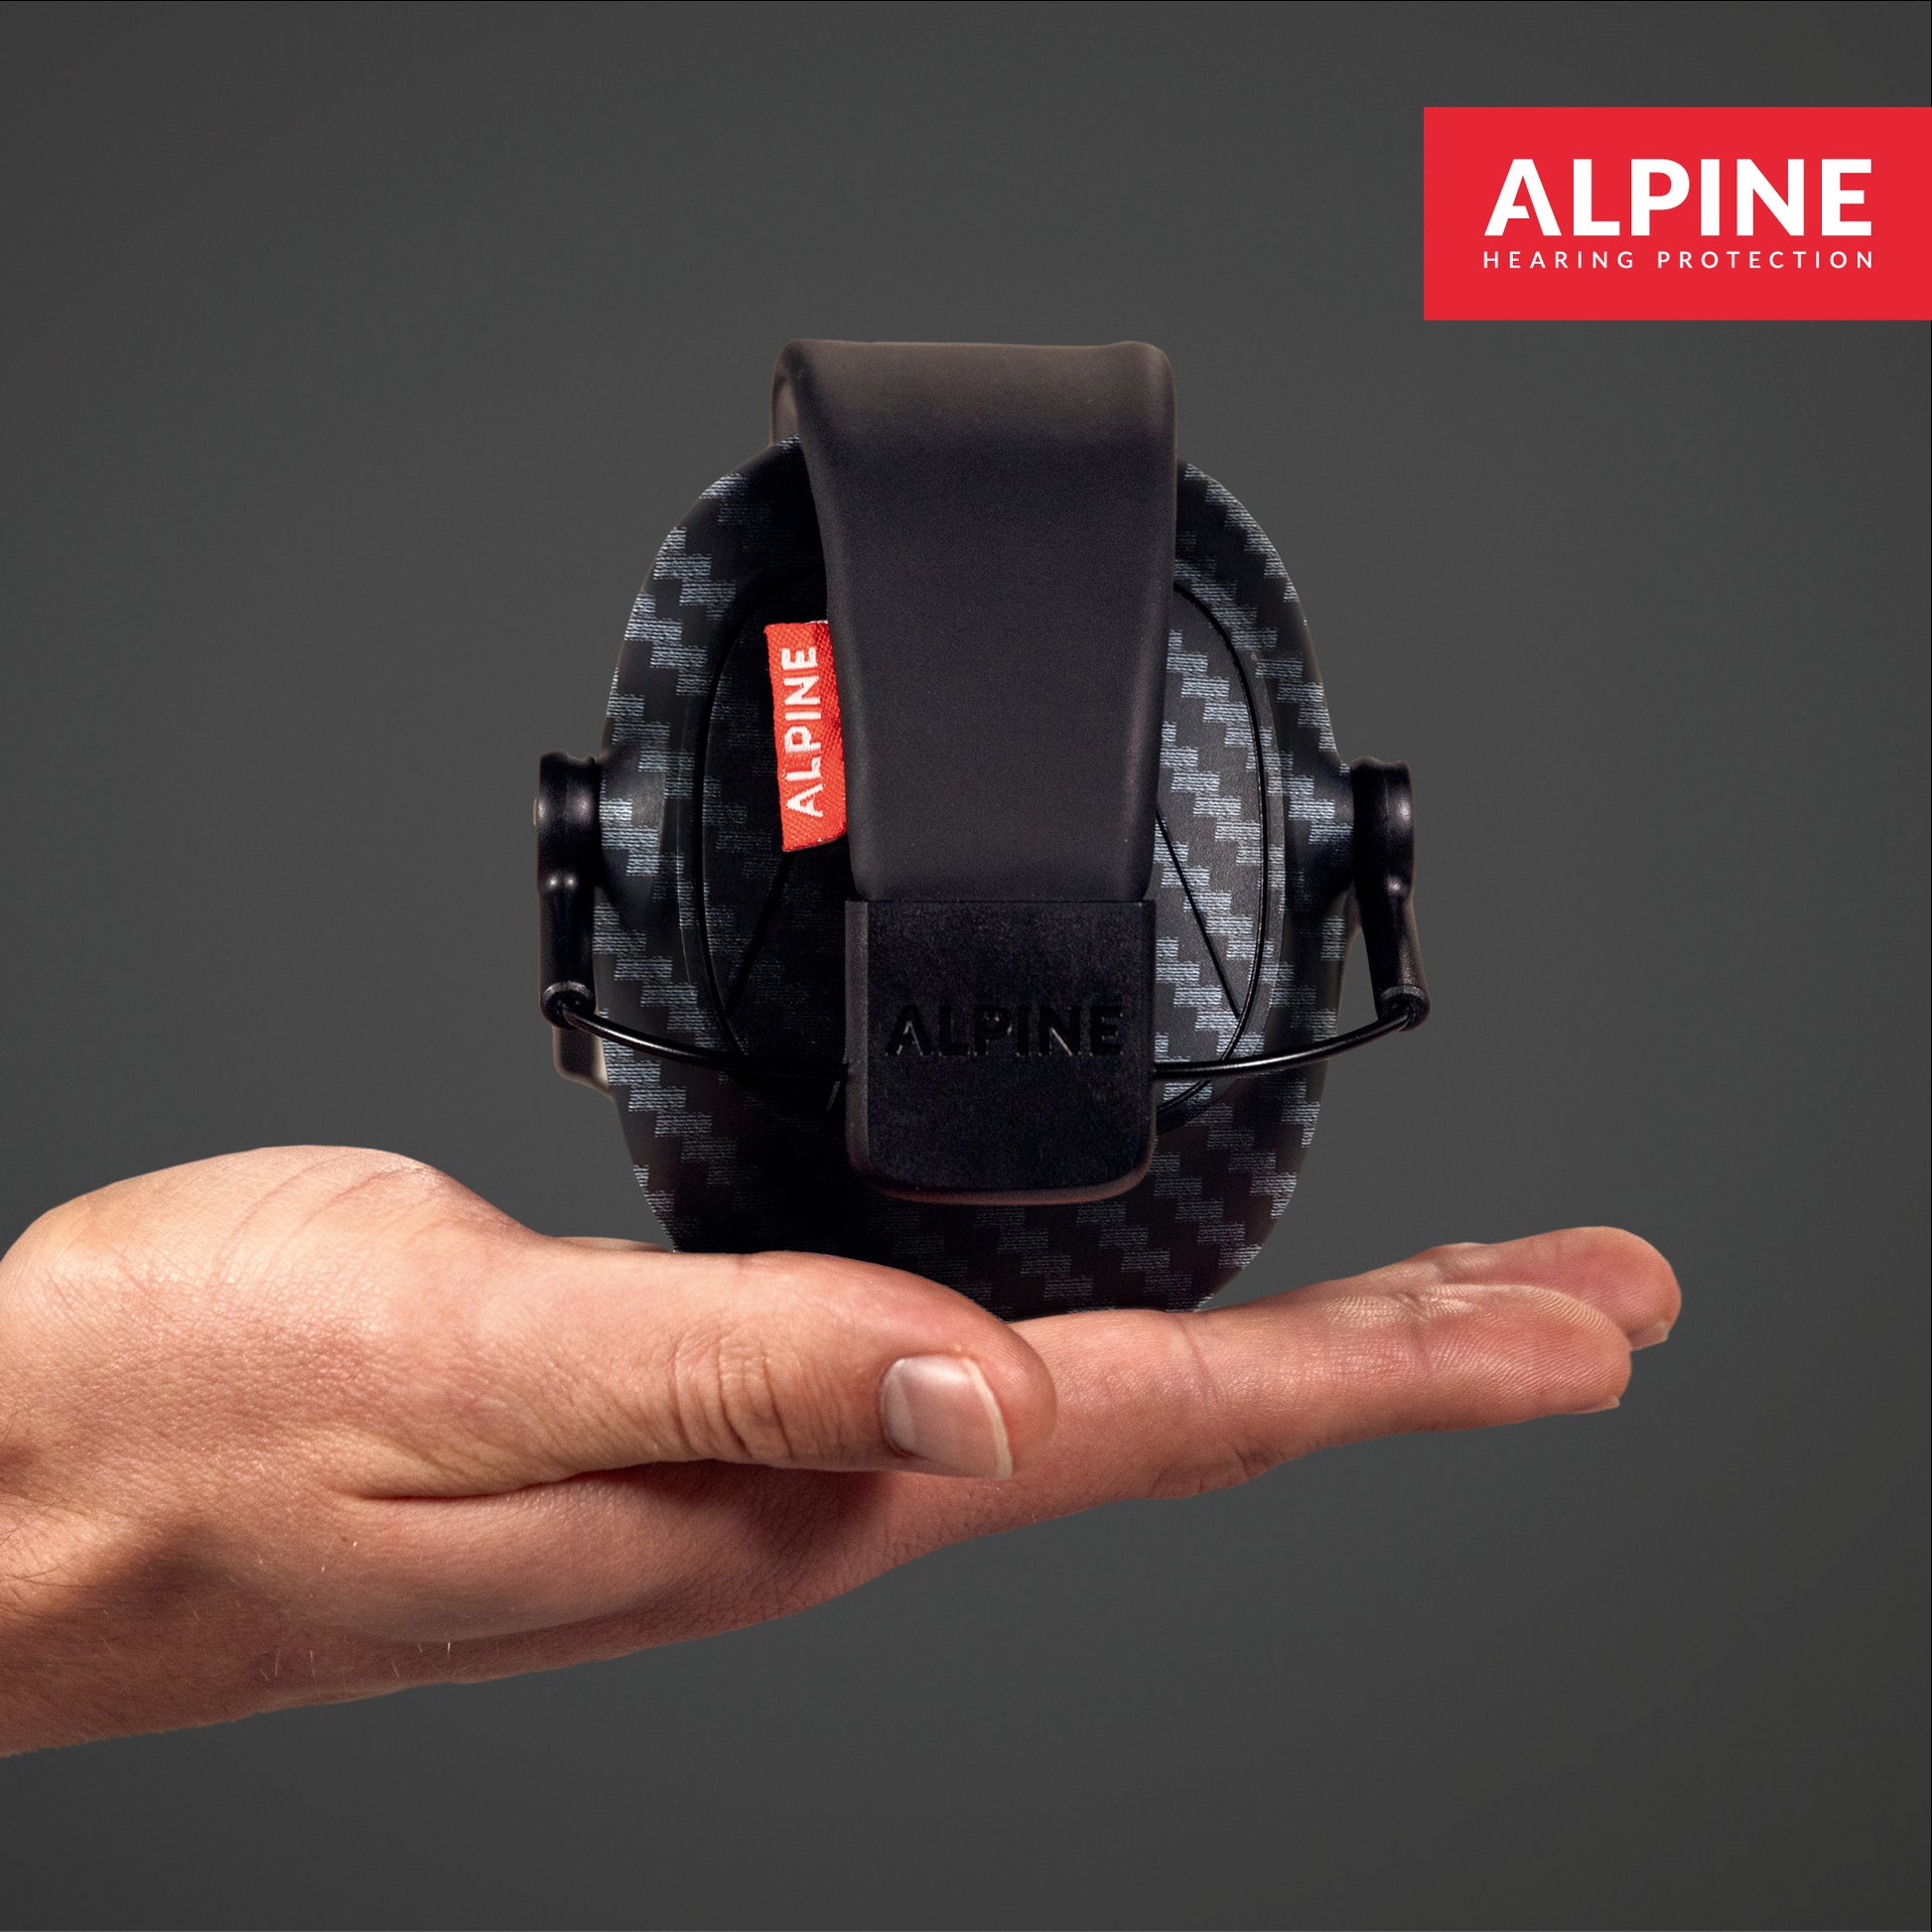 Alpine Defender - Casque anti-bruit adulte 26dB - Auriseo